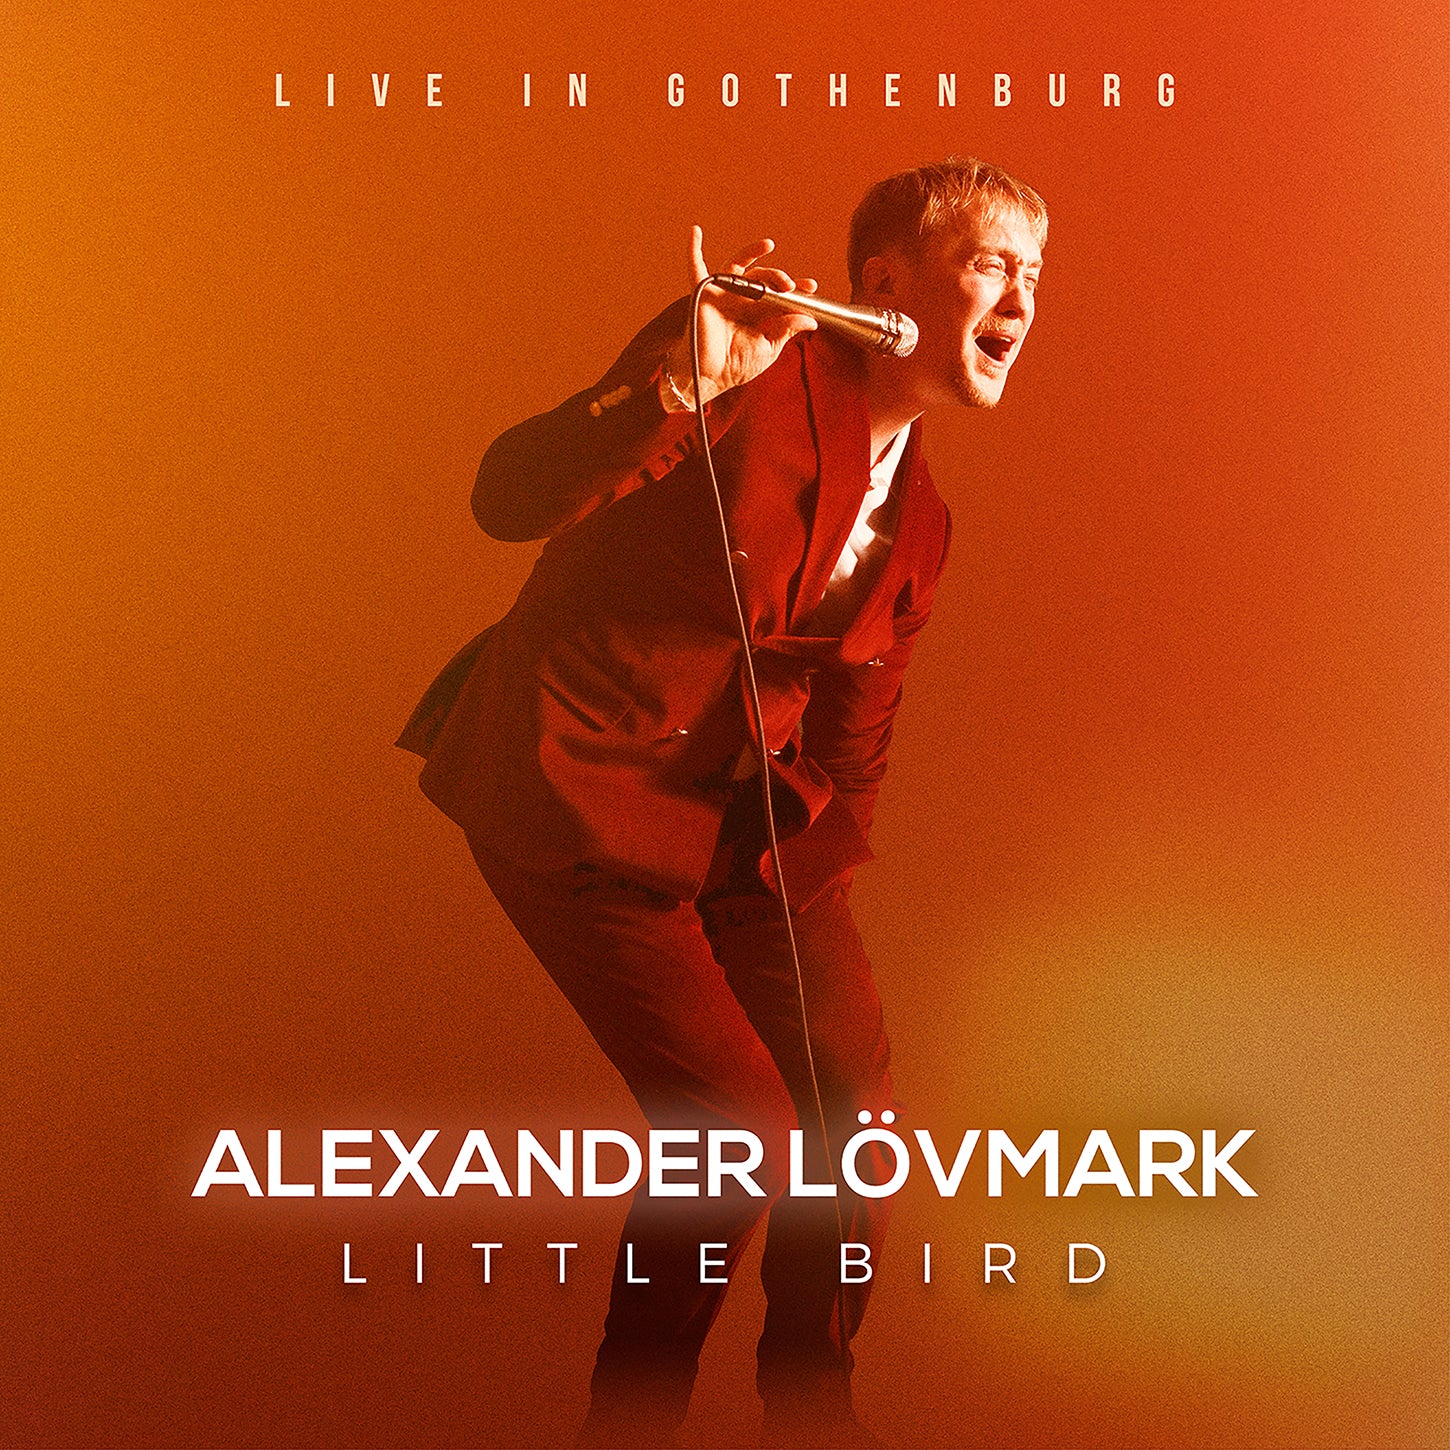 Little Bird – Live in Gothenburg / Alexander Lövmark